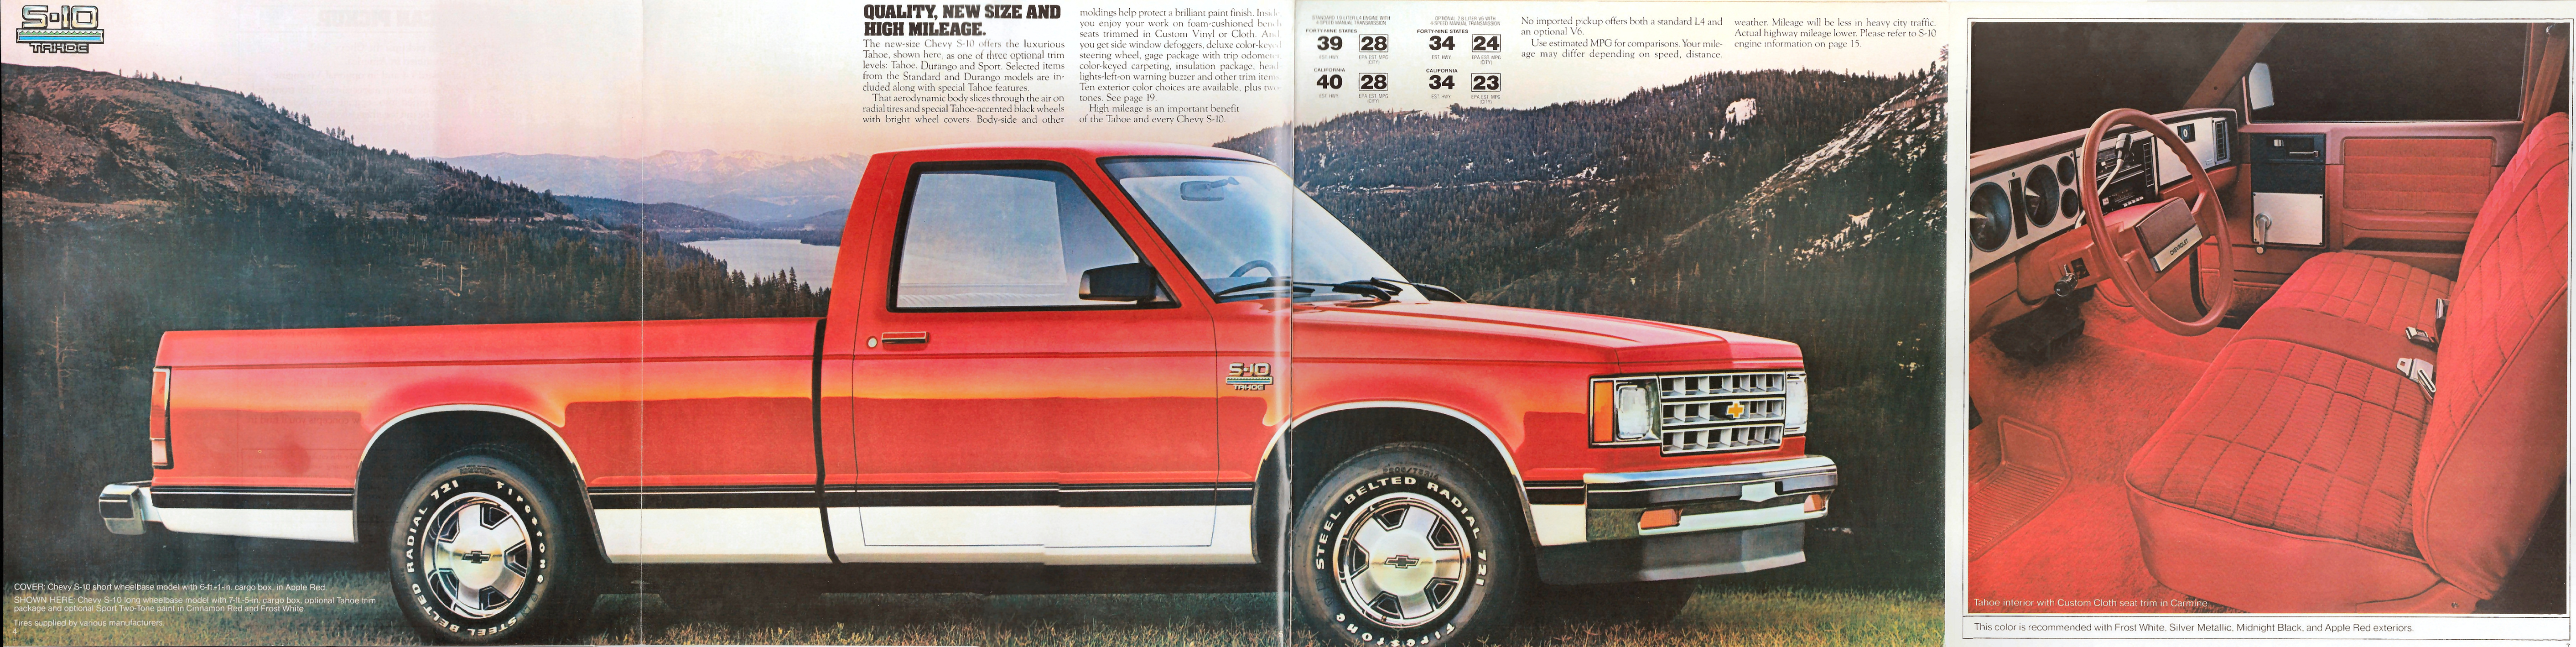 1982_Chevrolet_S-10_Pickup-04-05-06-07